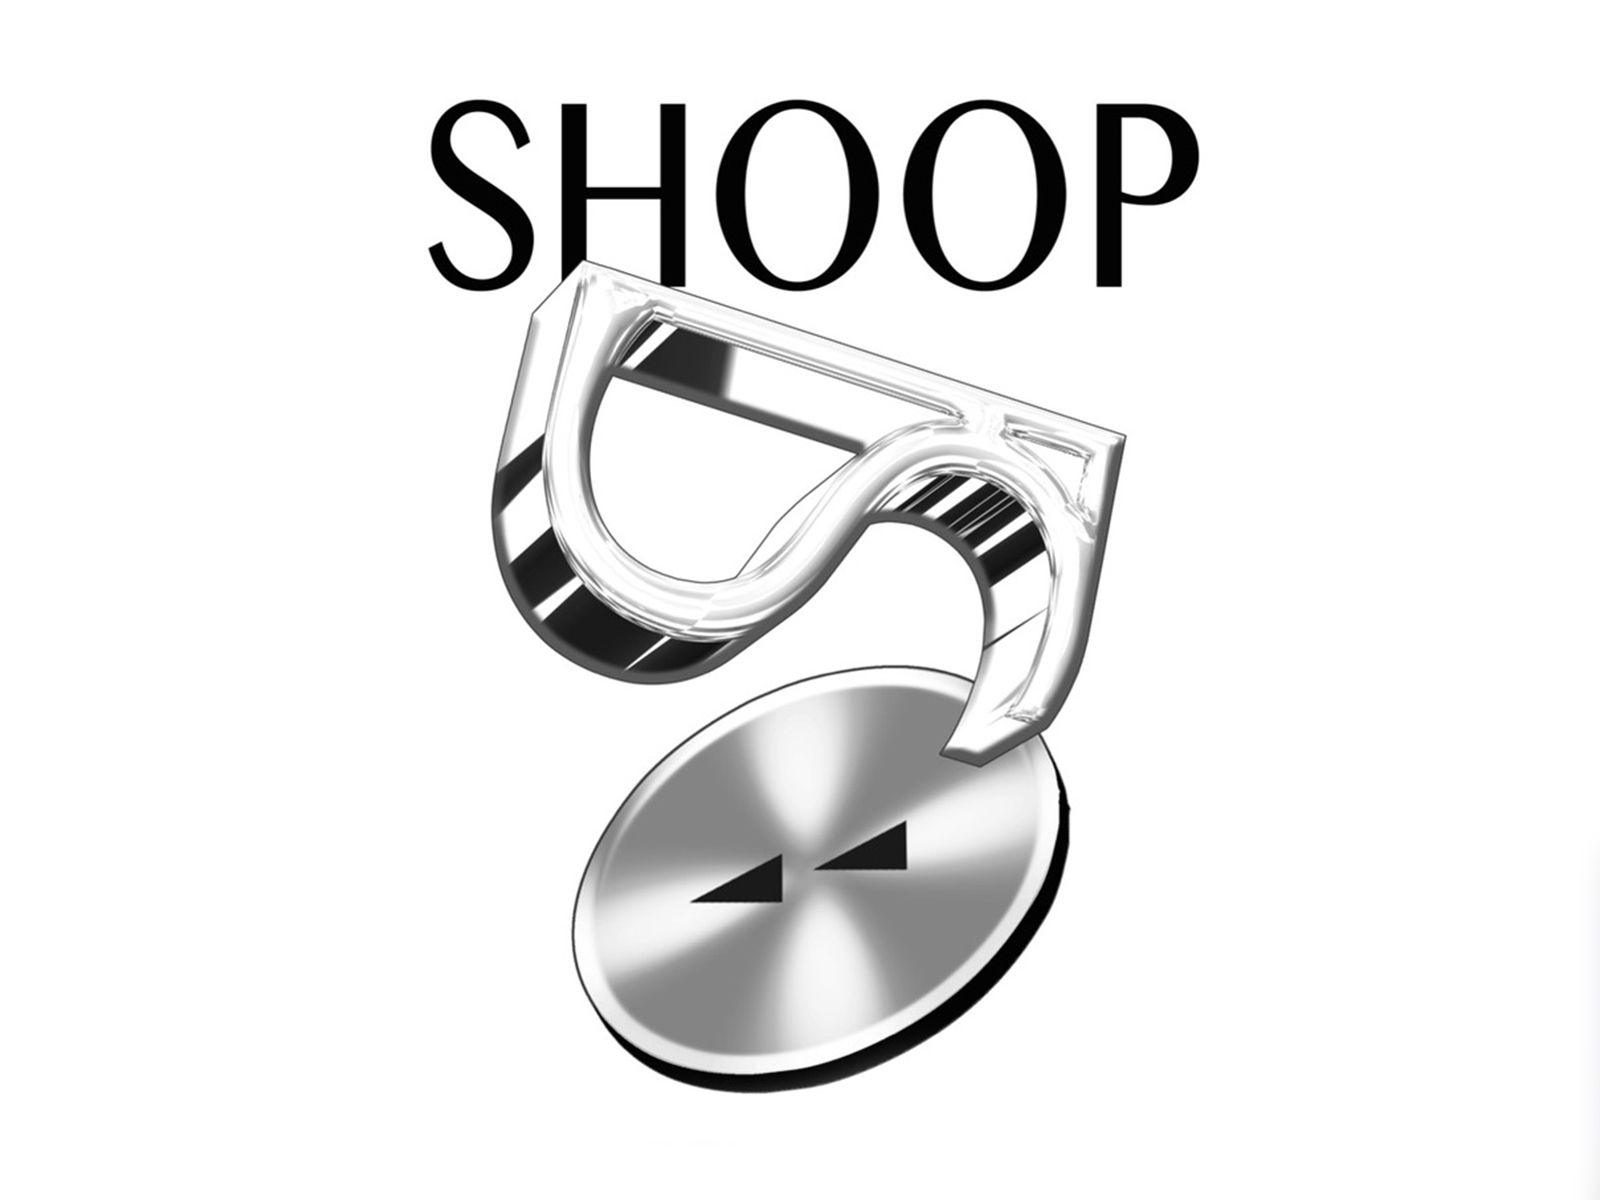 SHOOP presents “The Rewind Shop” in Bate Social Store